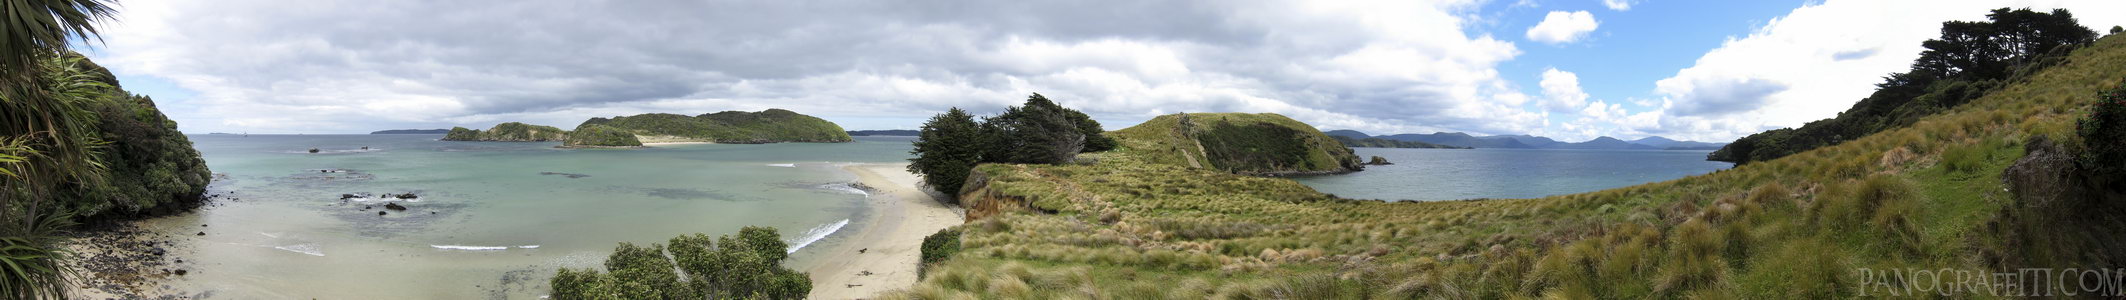 Ringaringa Point - Stewart Island, Southland, New Zealand